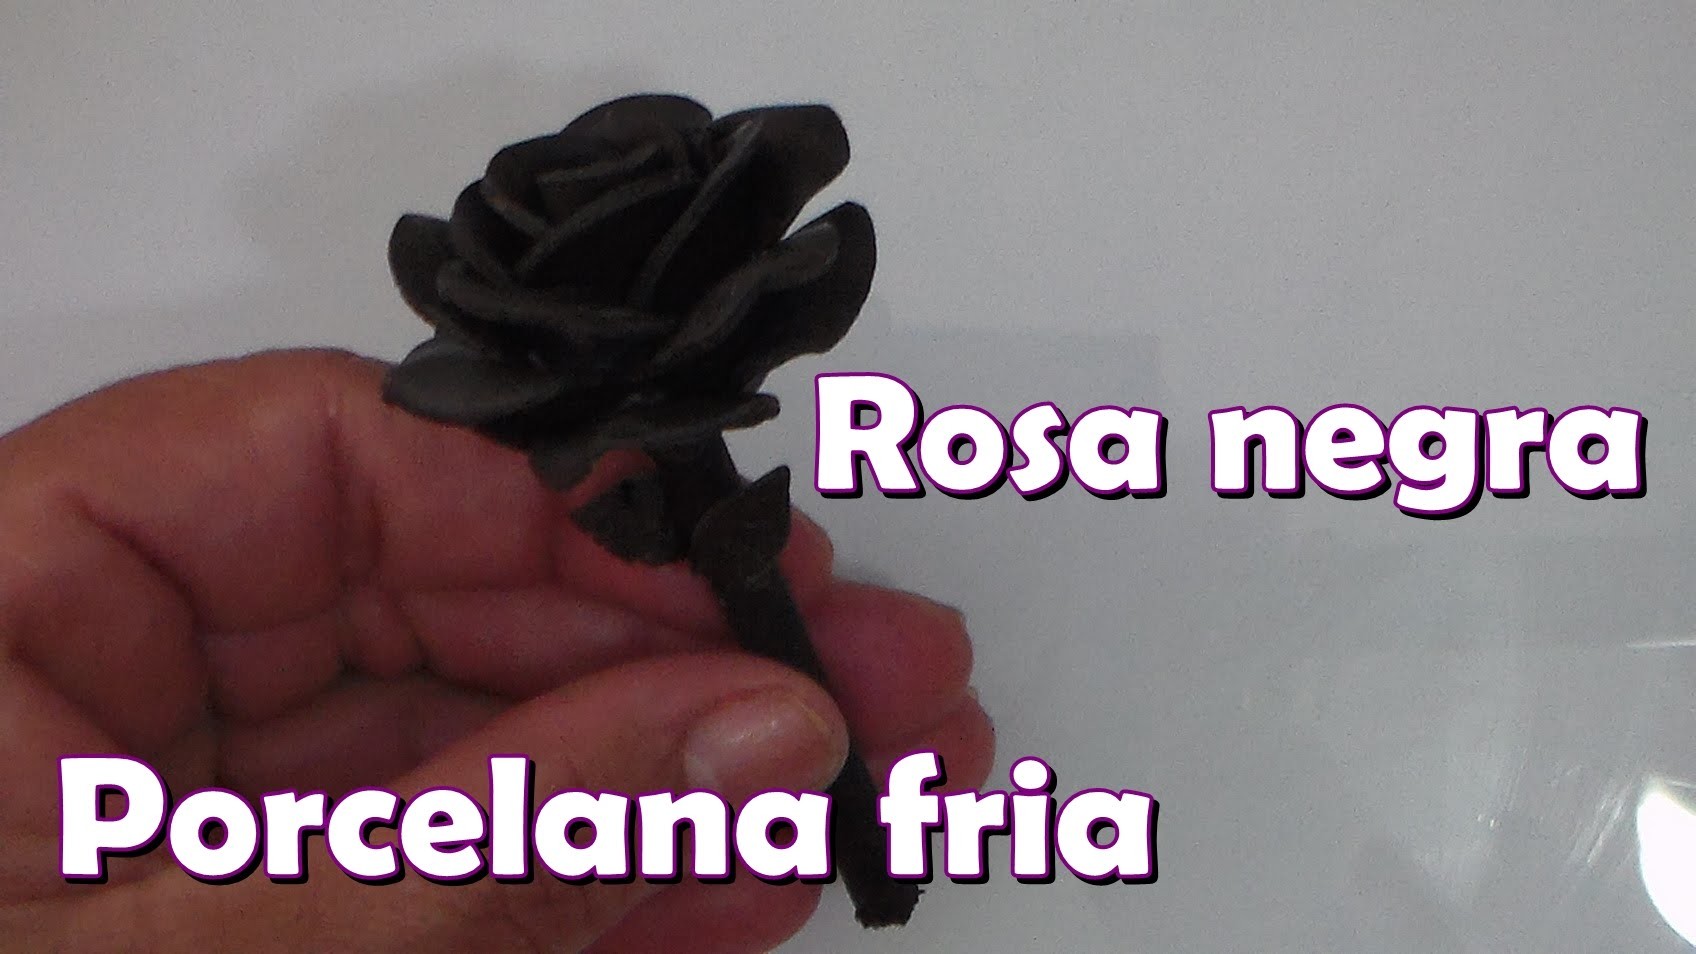 Rosa negra en porcelana fria. Black Rose in cold porcelain